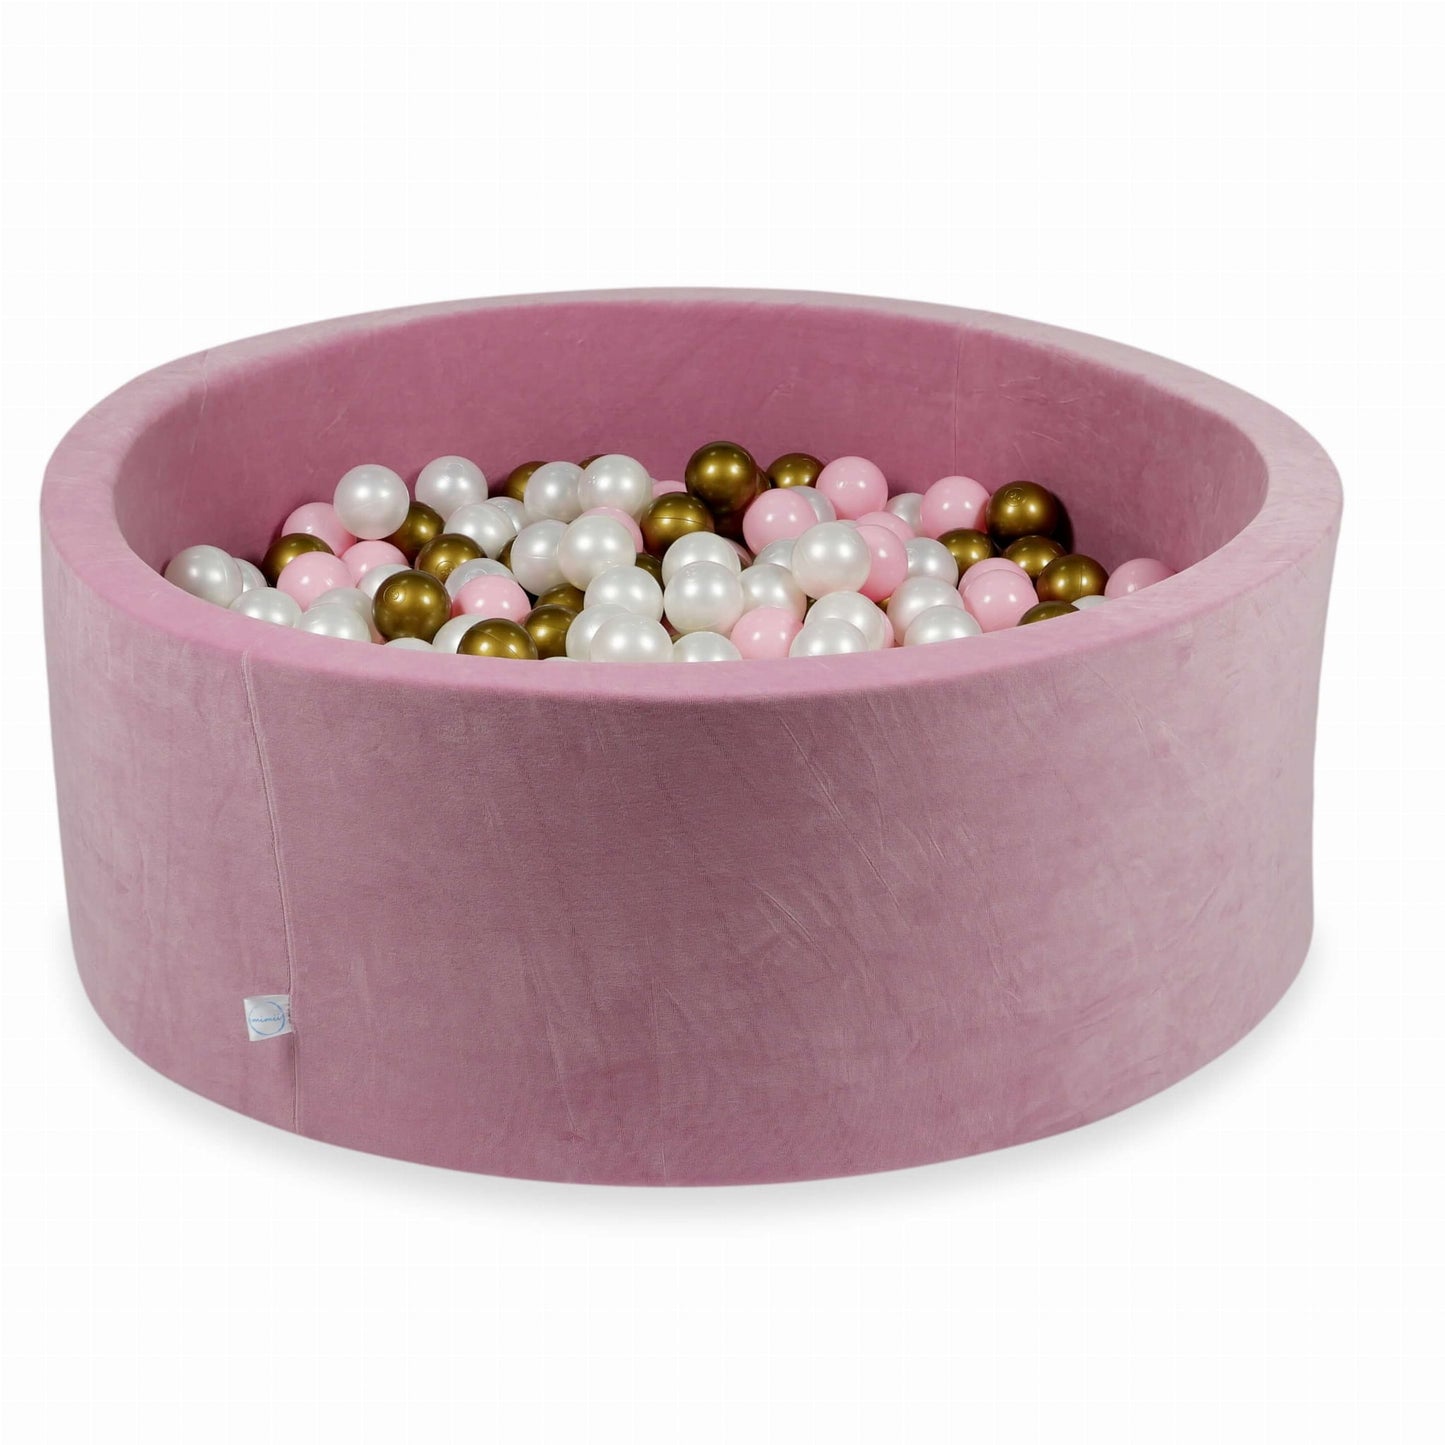 Piscine à Balles 110x40 Velvet Soft rose avec balles 500 pcs  (perle, vieil or, rose clair)